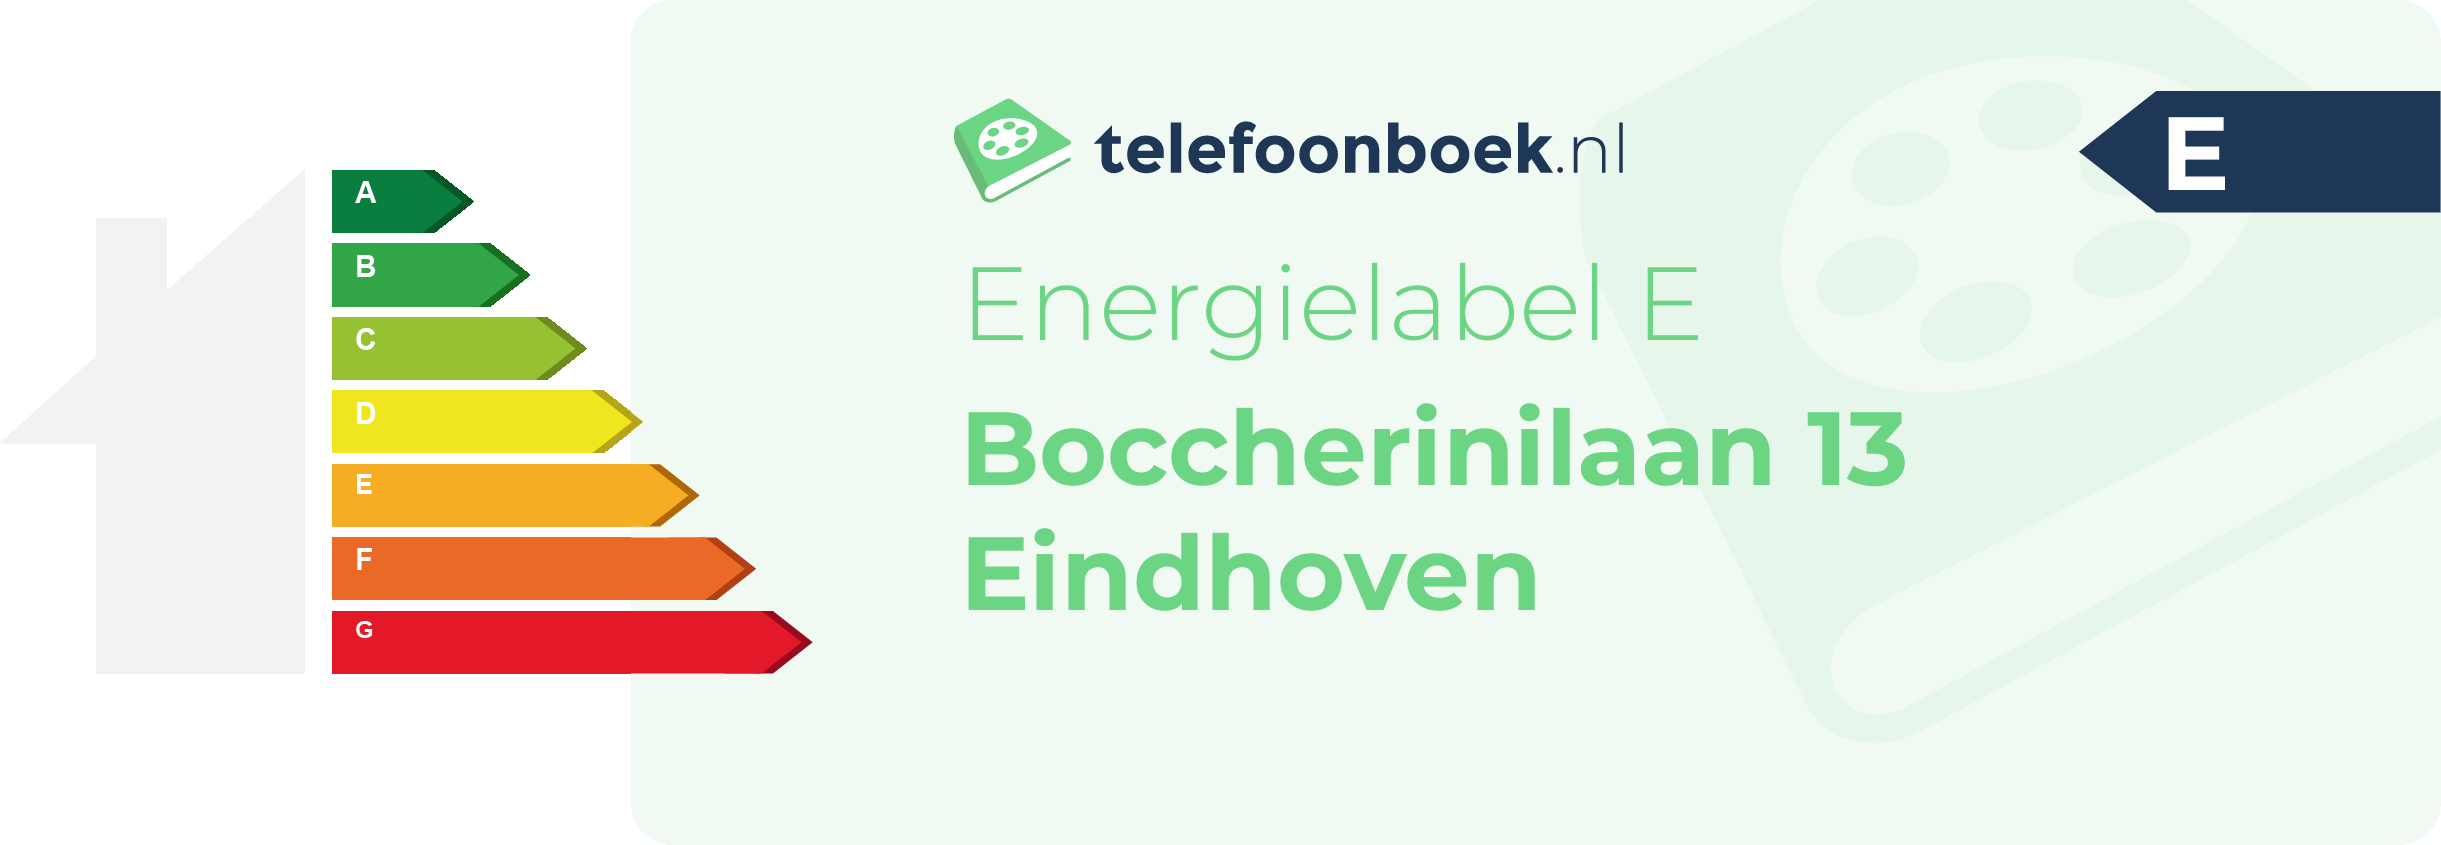 Energielabel Boccherinilaan 13 Eindhoven